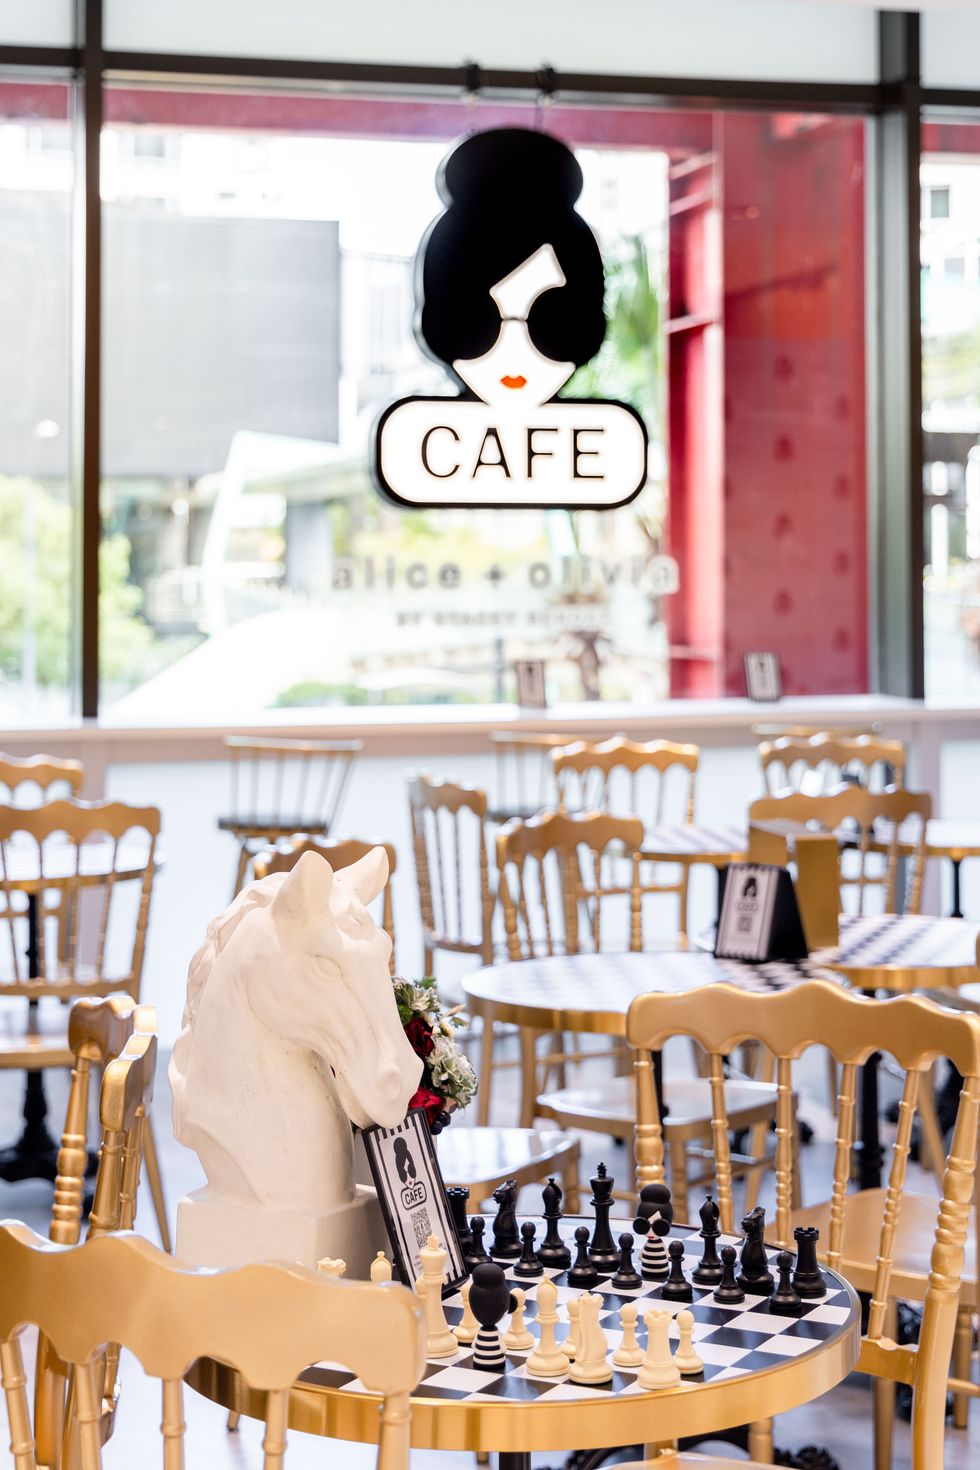 全球首間alice  olivia café登台！聯手隱藏版預約名店打造食尚選品店